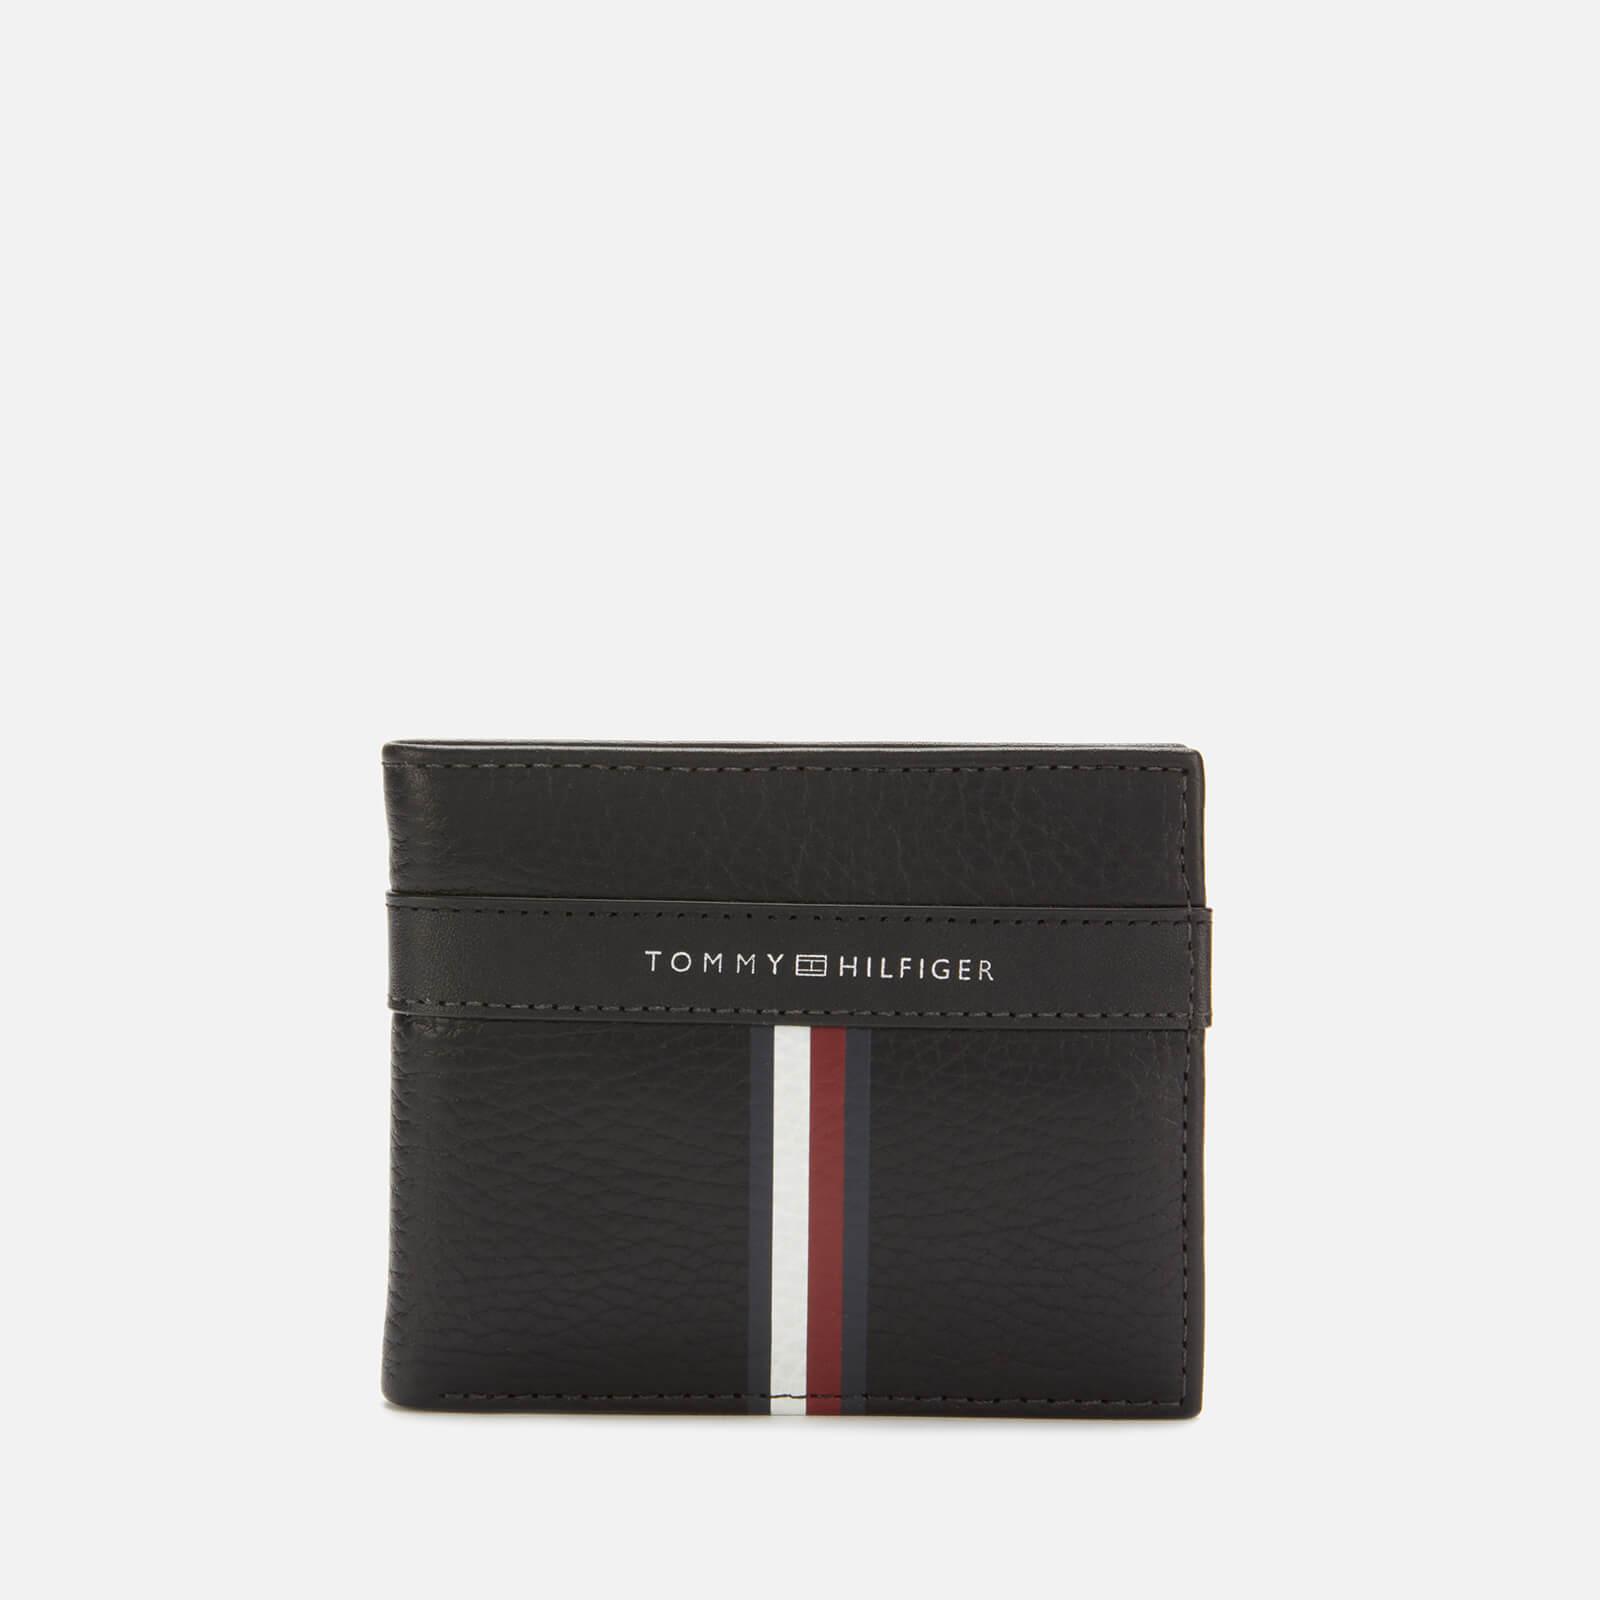 tommy hilfiger mini cc wallet